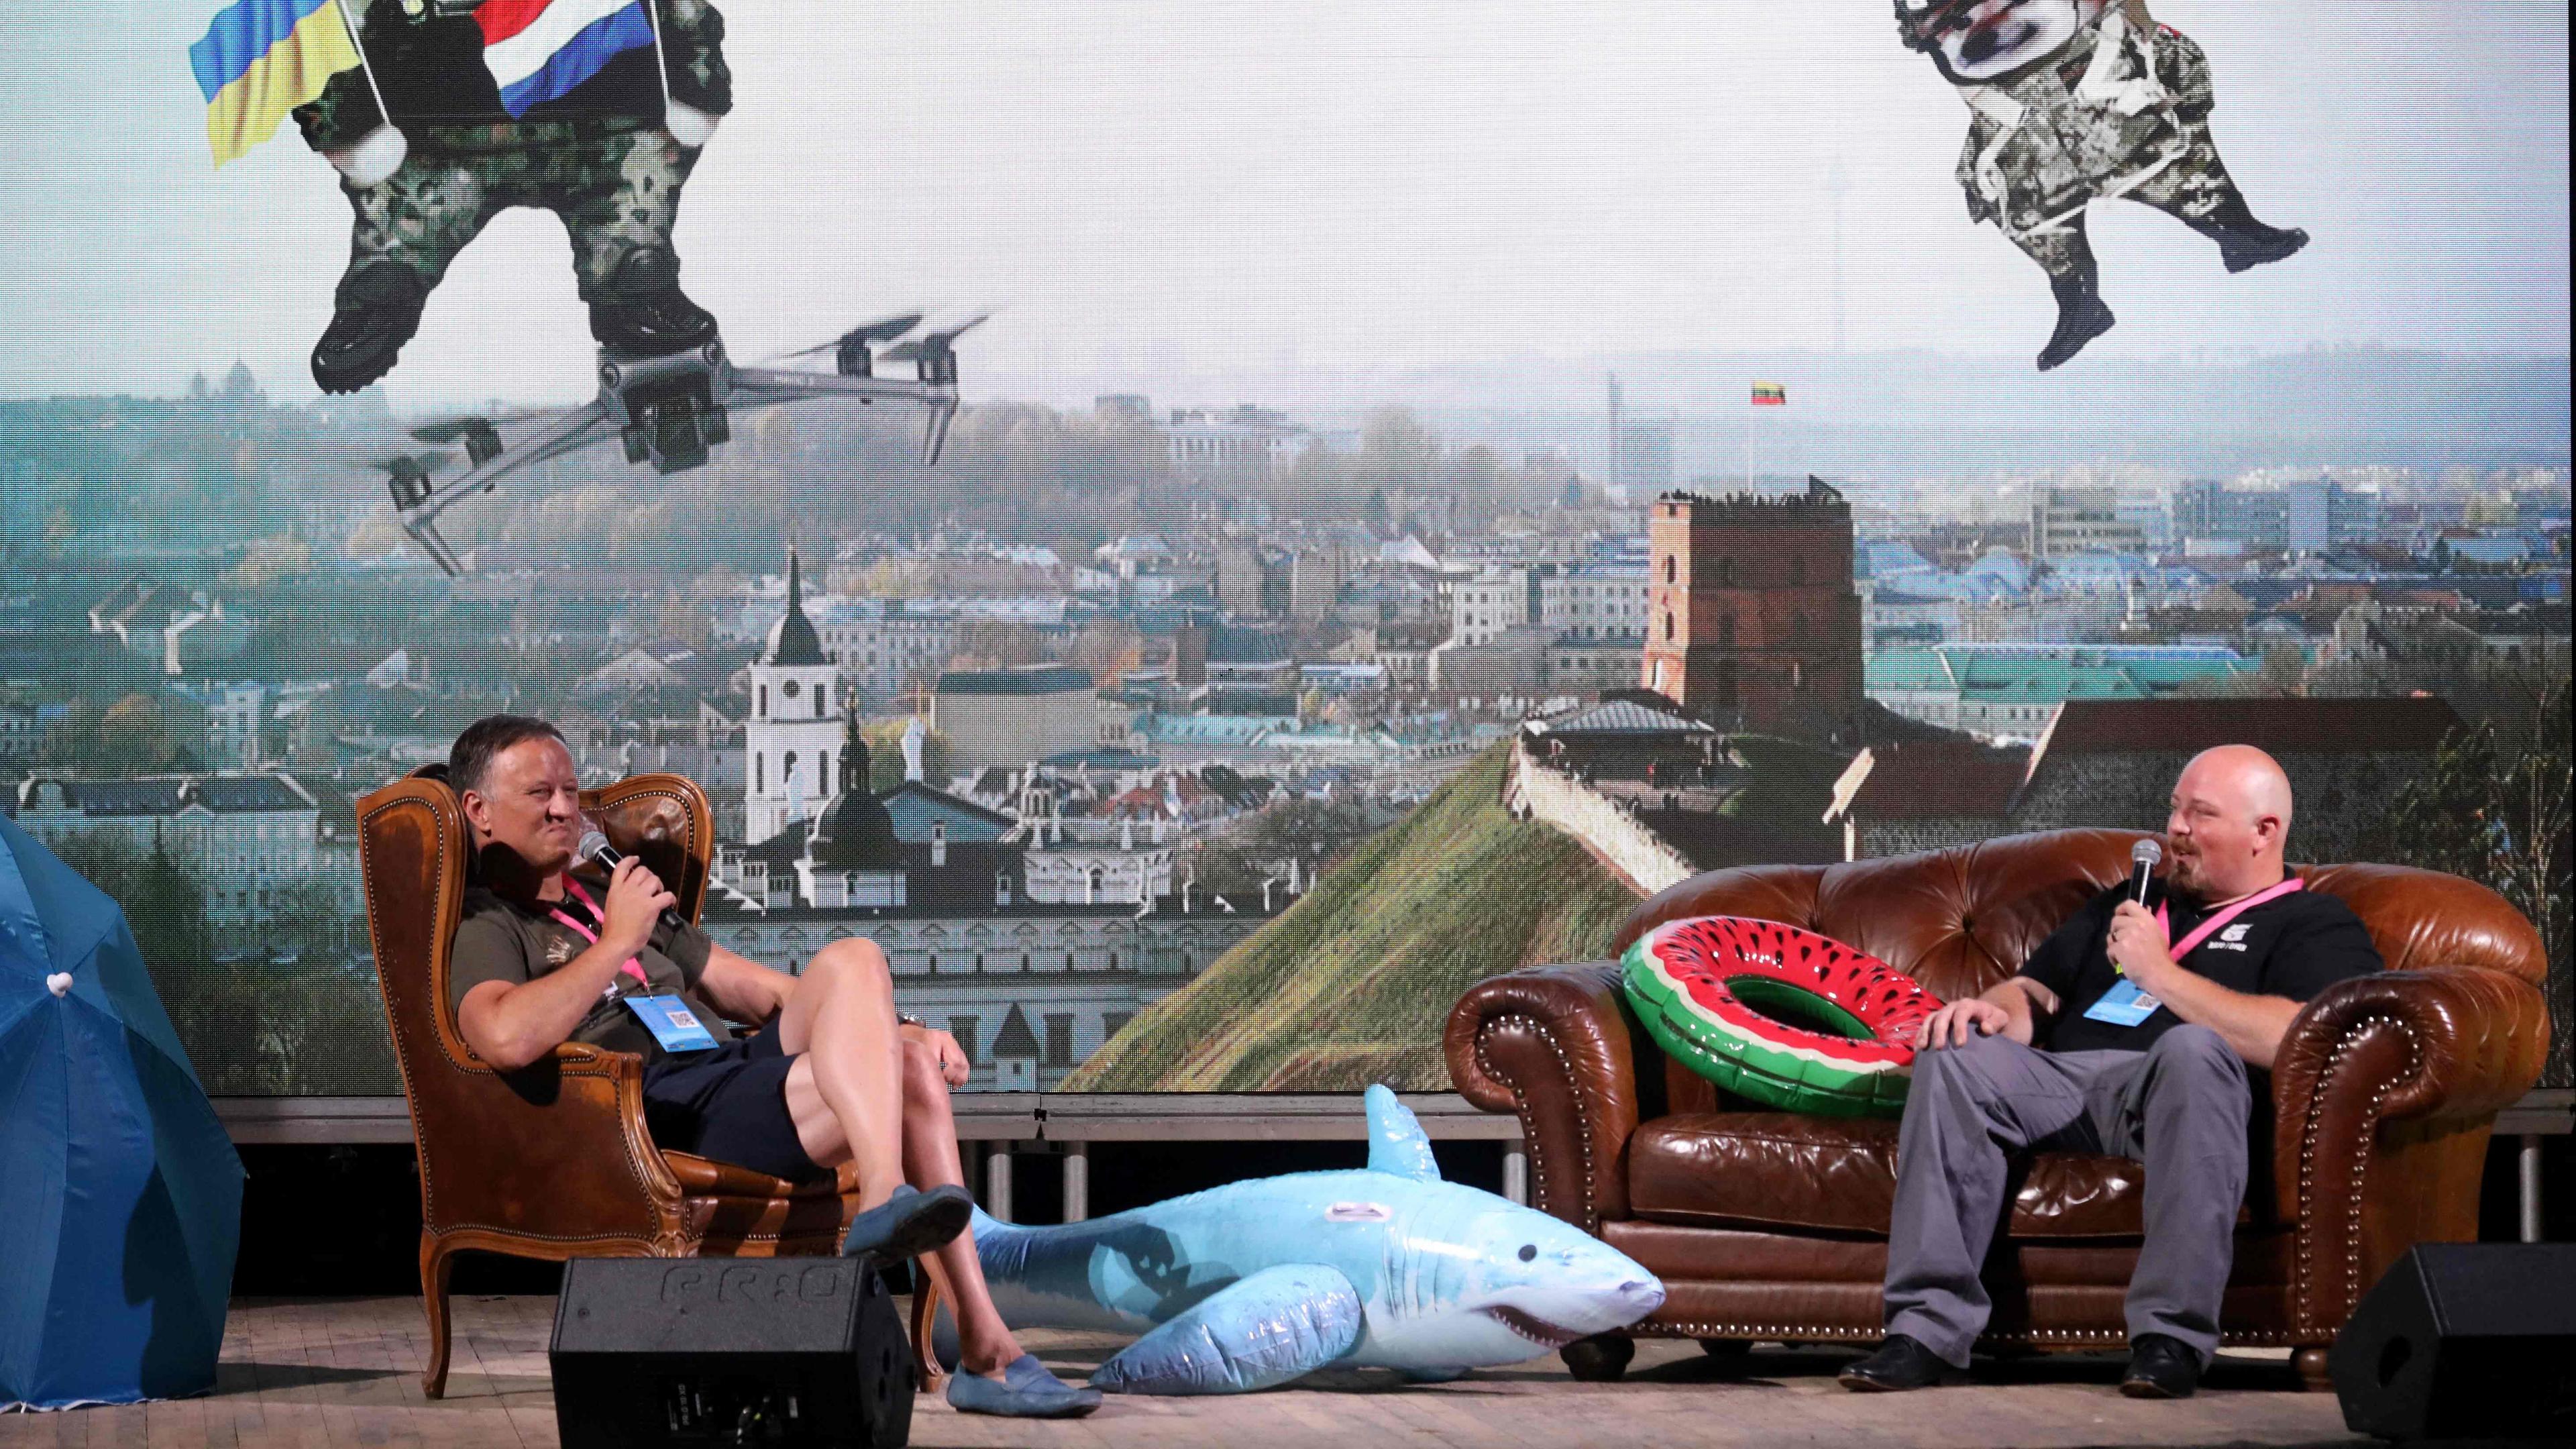 Zwei Männer sitzen auf Sesseln auf einer Bühne und unterhalten sich mit Mikros in der Hand. Im Hintergrund ist ein buntes Bild zu sehen, auf dem animierte Hunde im Himmel schweben.